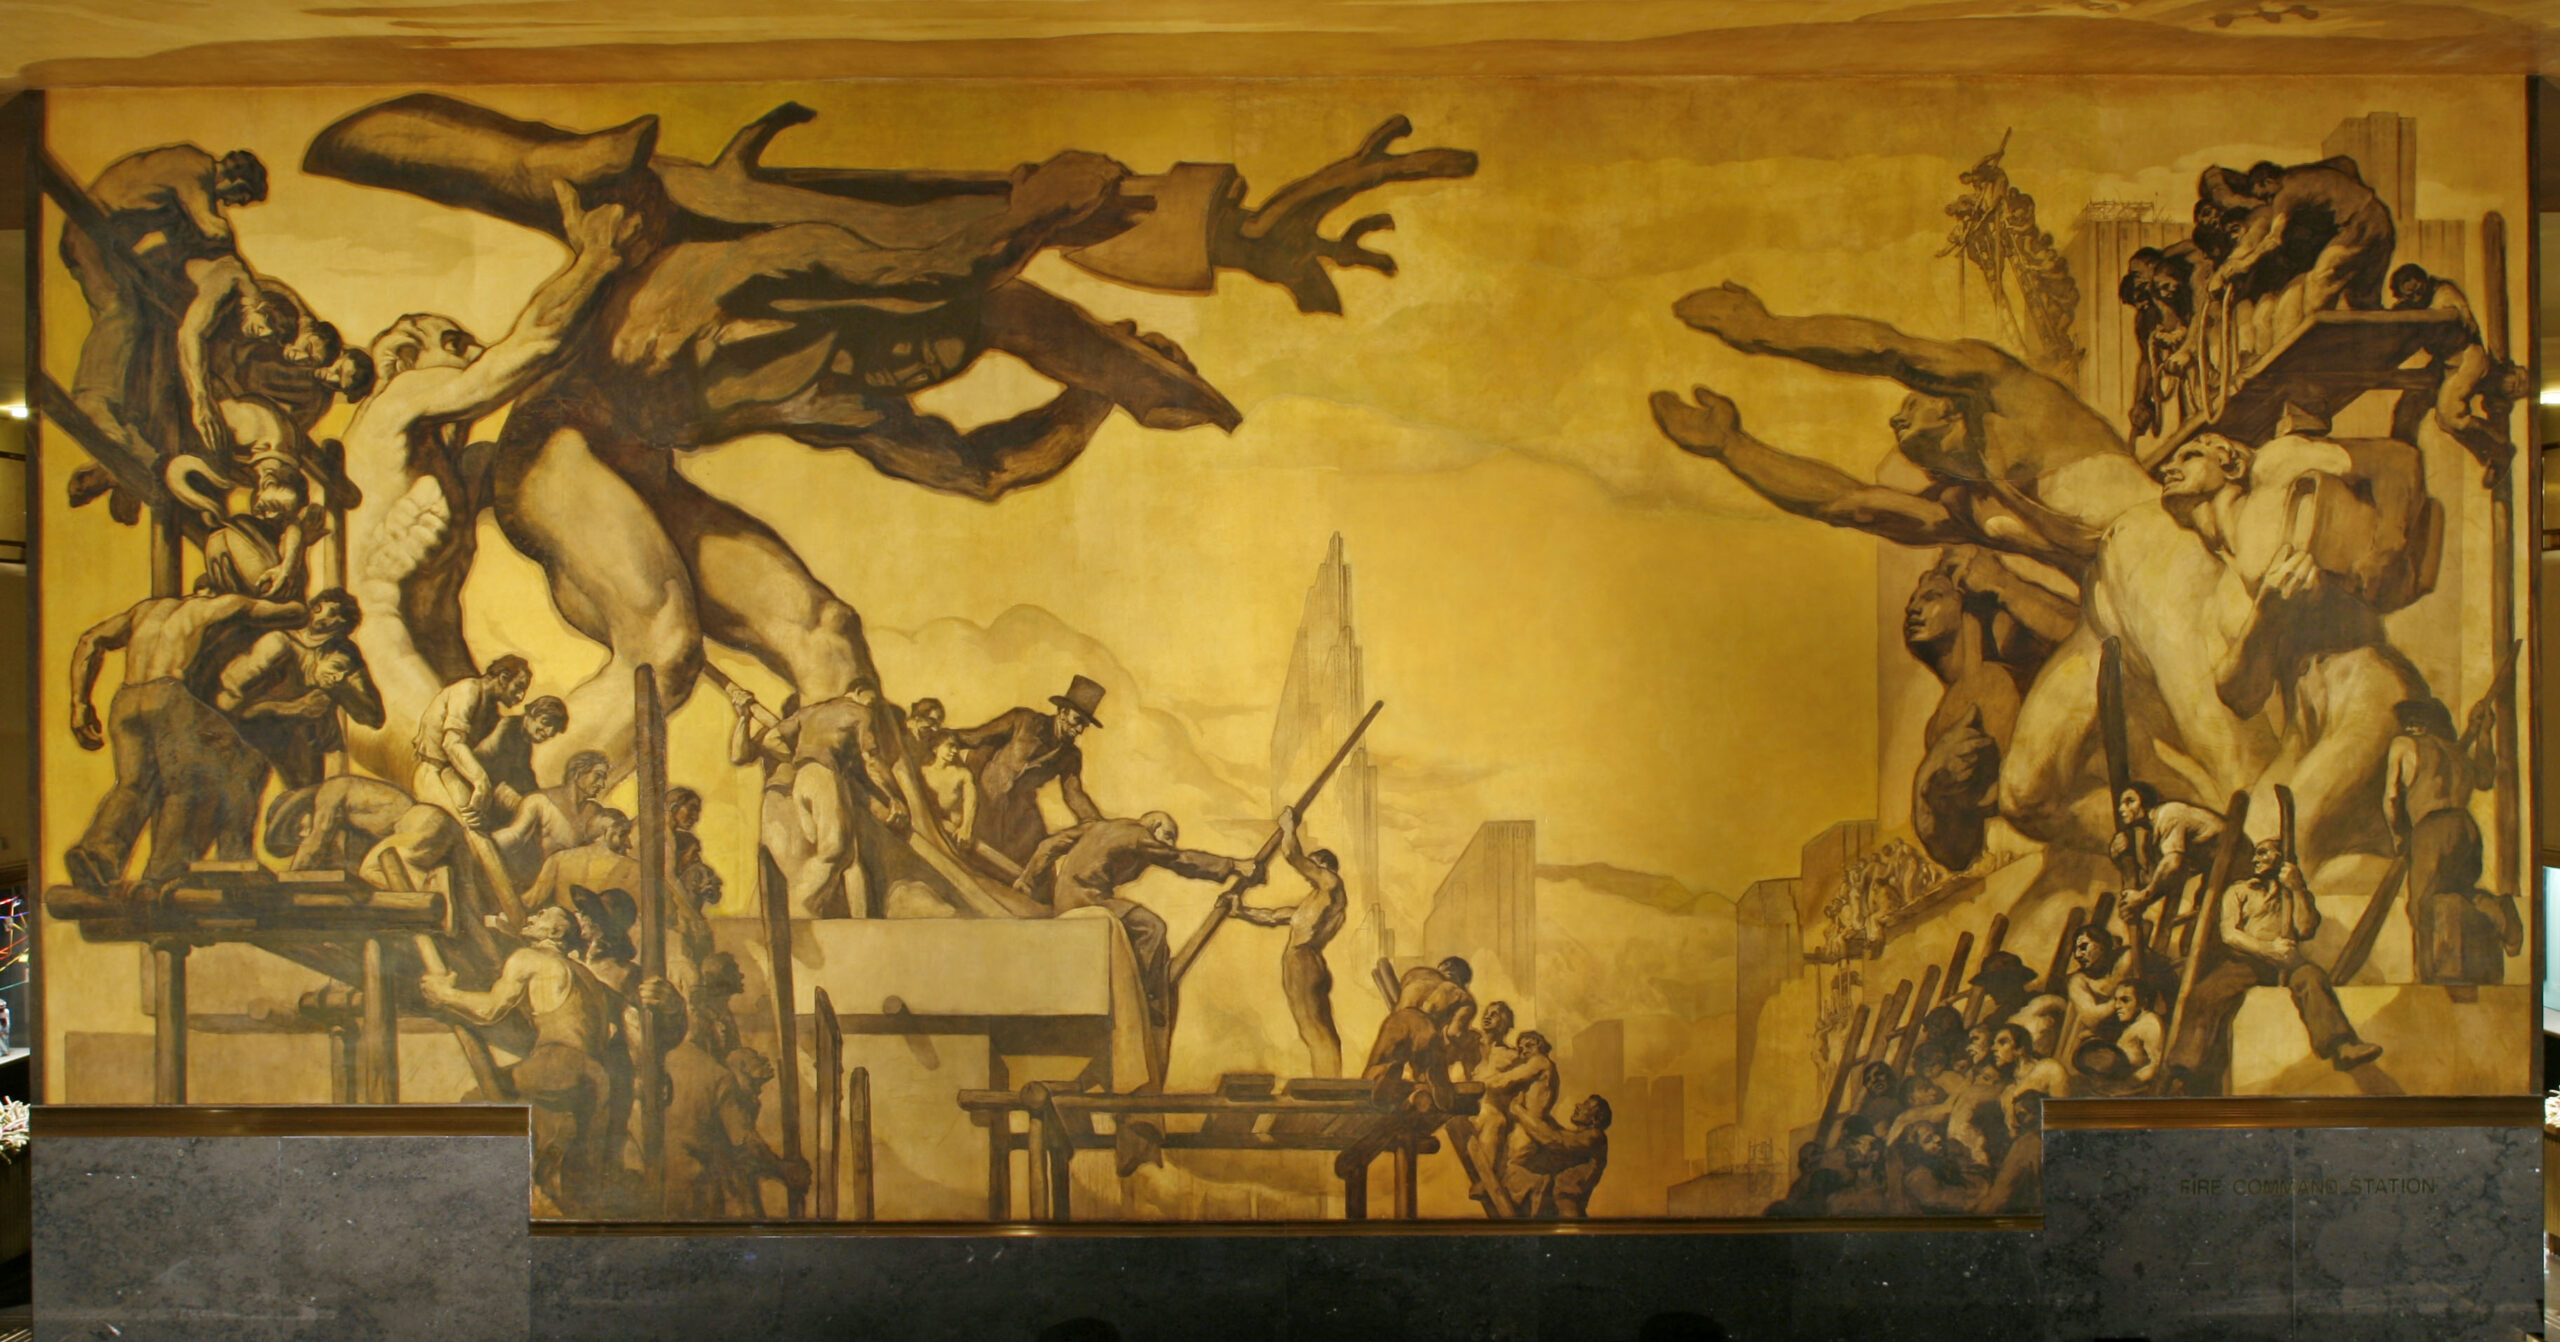 José Maria Sert, American Progress, 1937, Rockefeller Center, New York, NY, USA. 